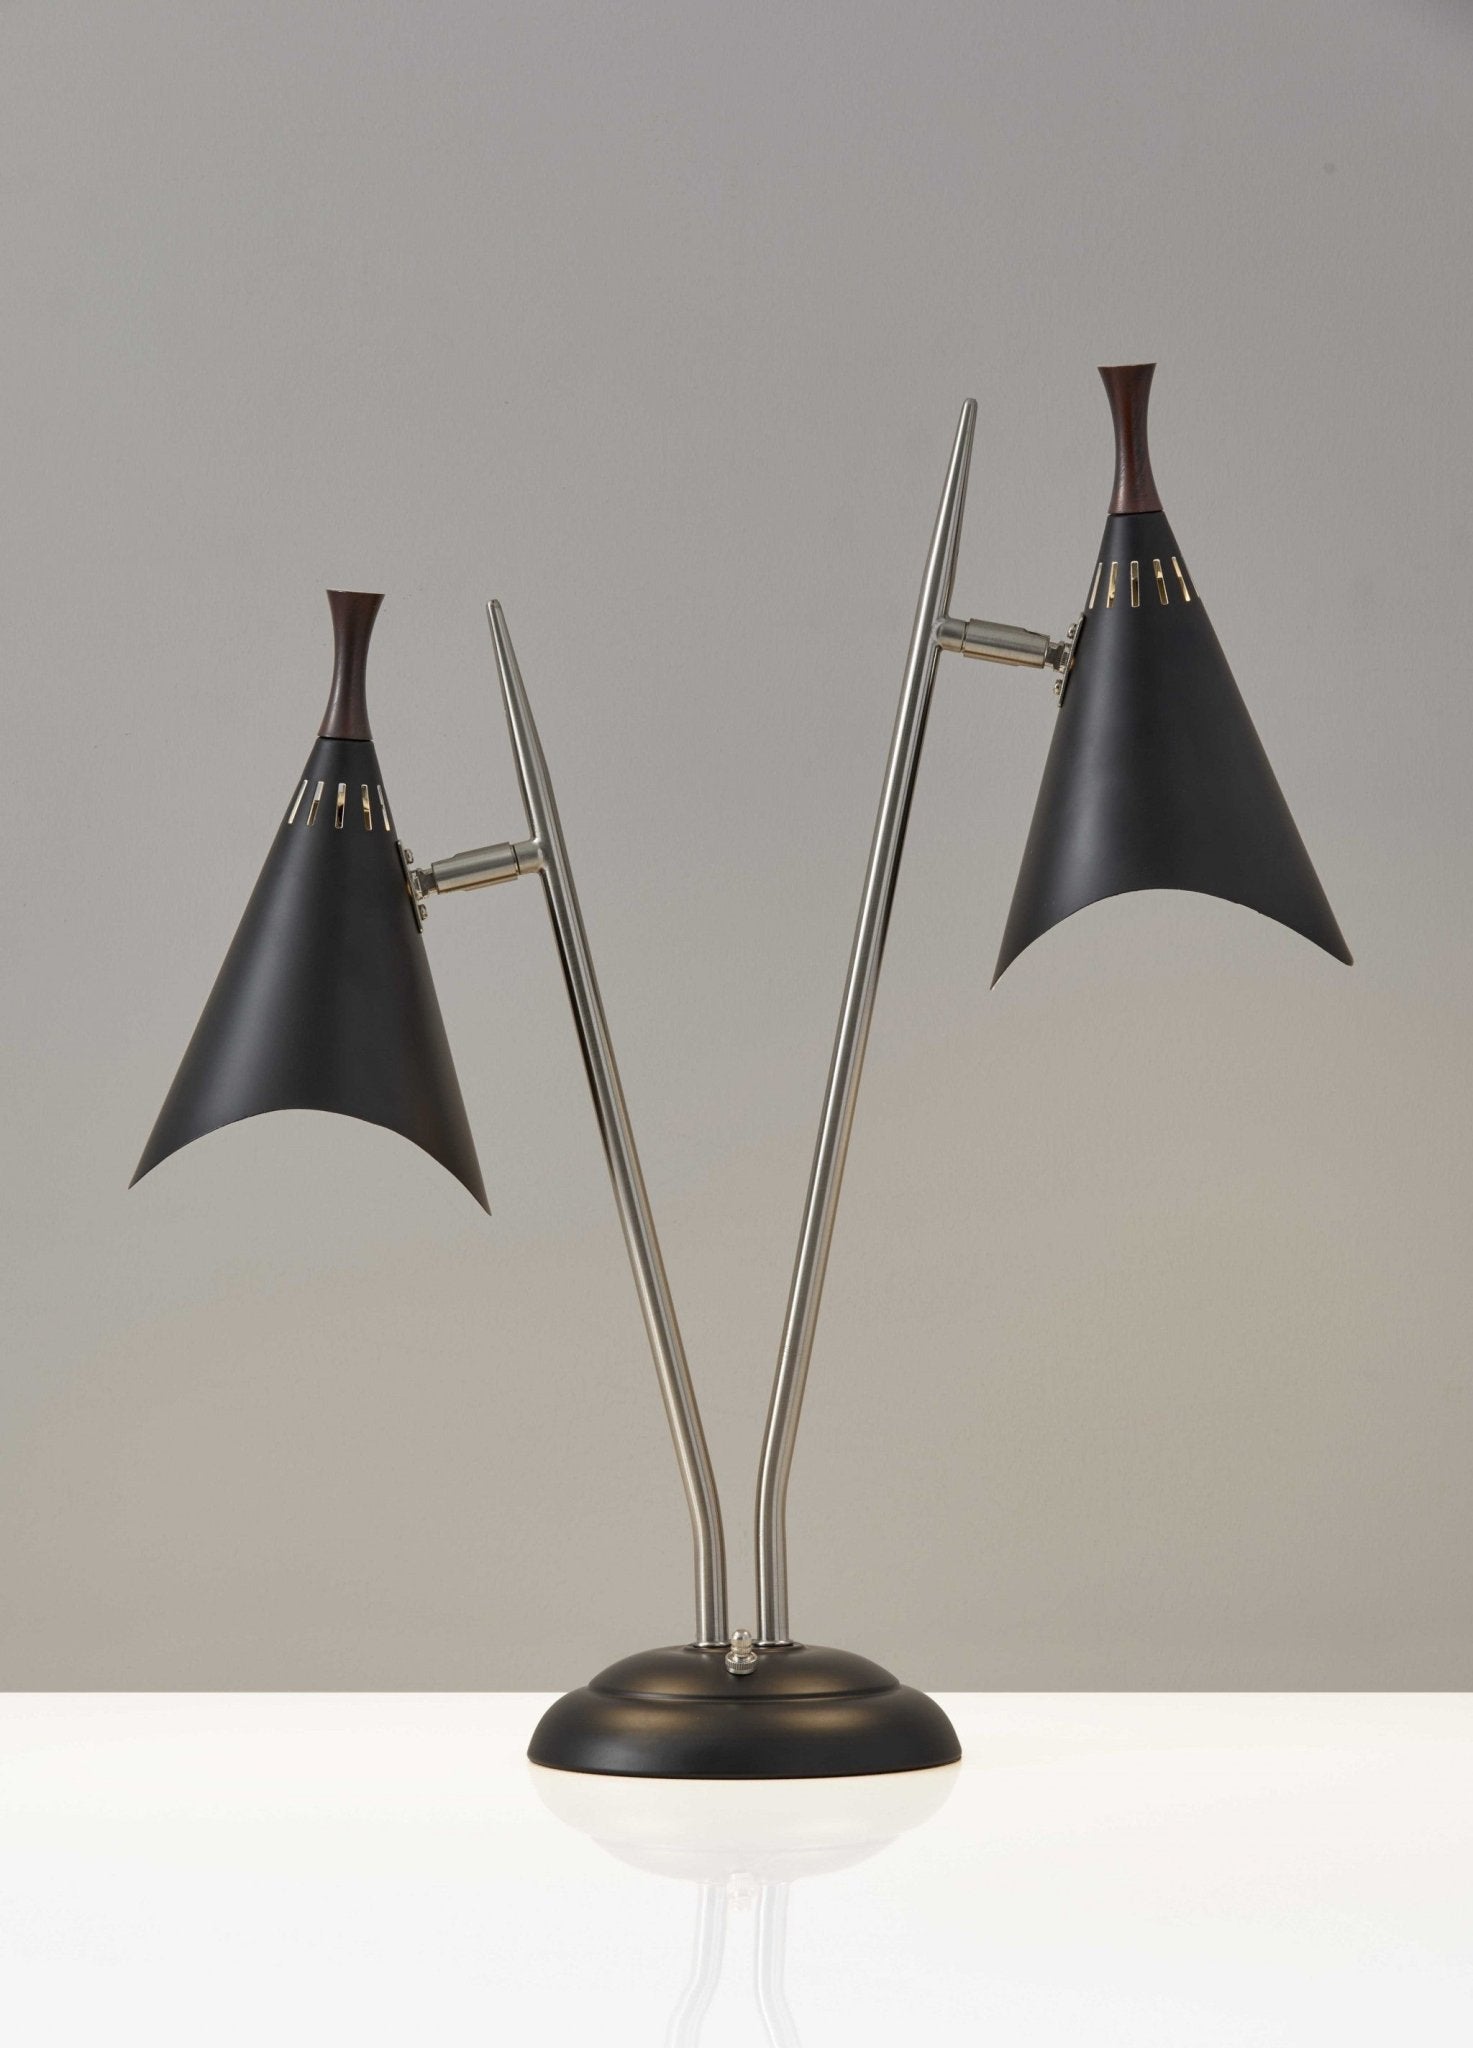 Matte-Black-Metal-Two-Light-Desk-Lamp-Smart-Outlet-Compatible-Table-Lamps